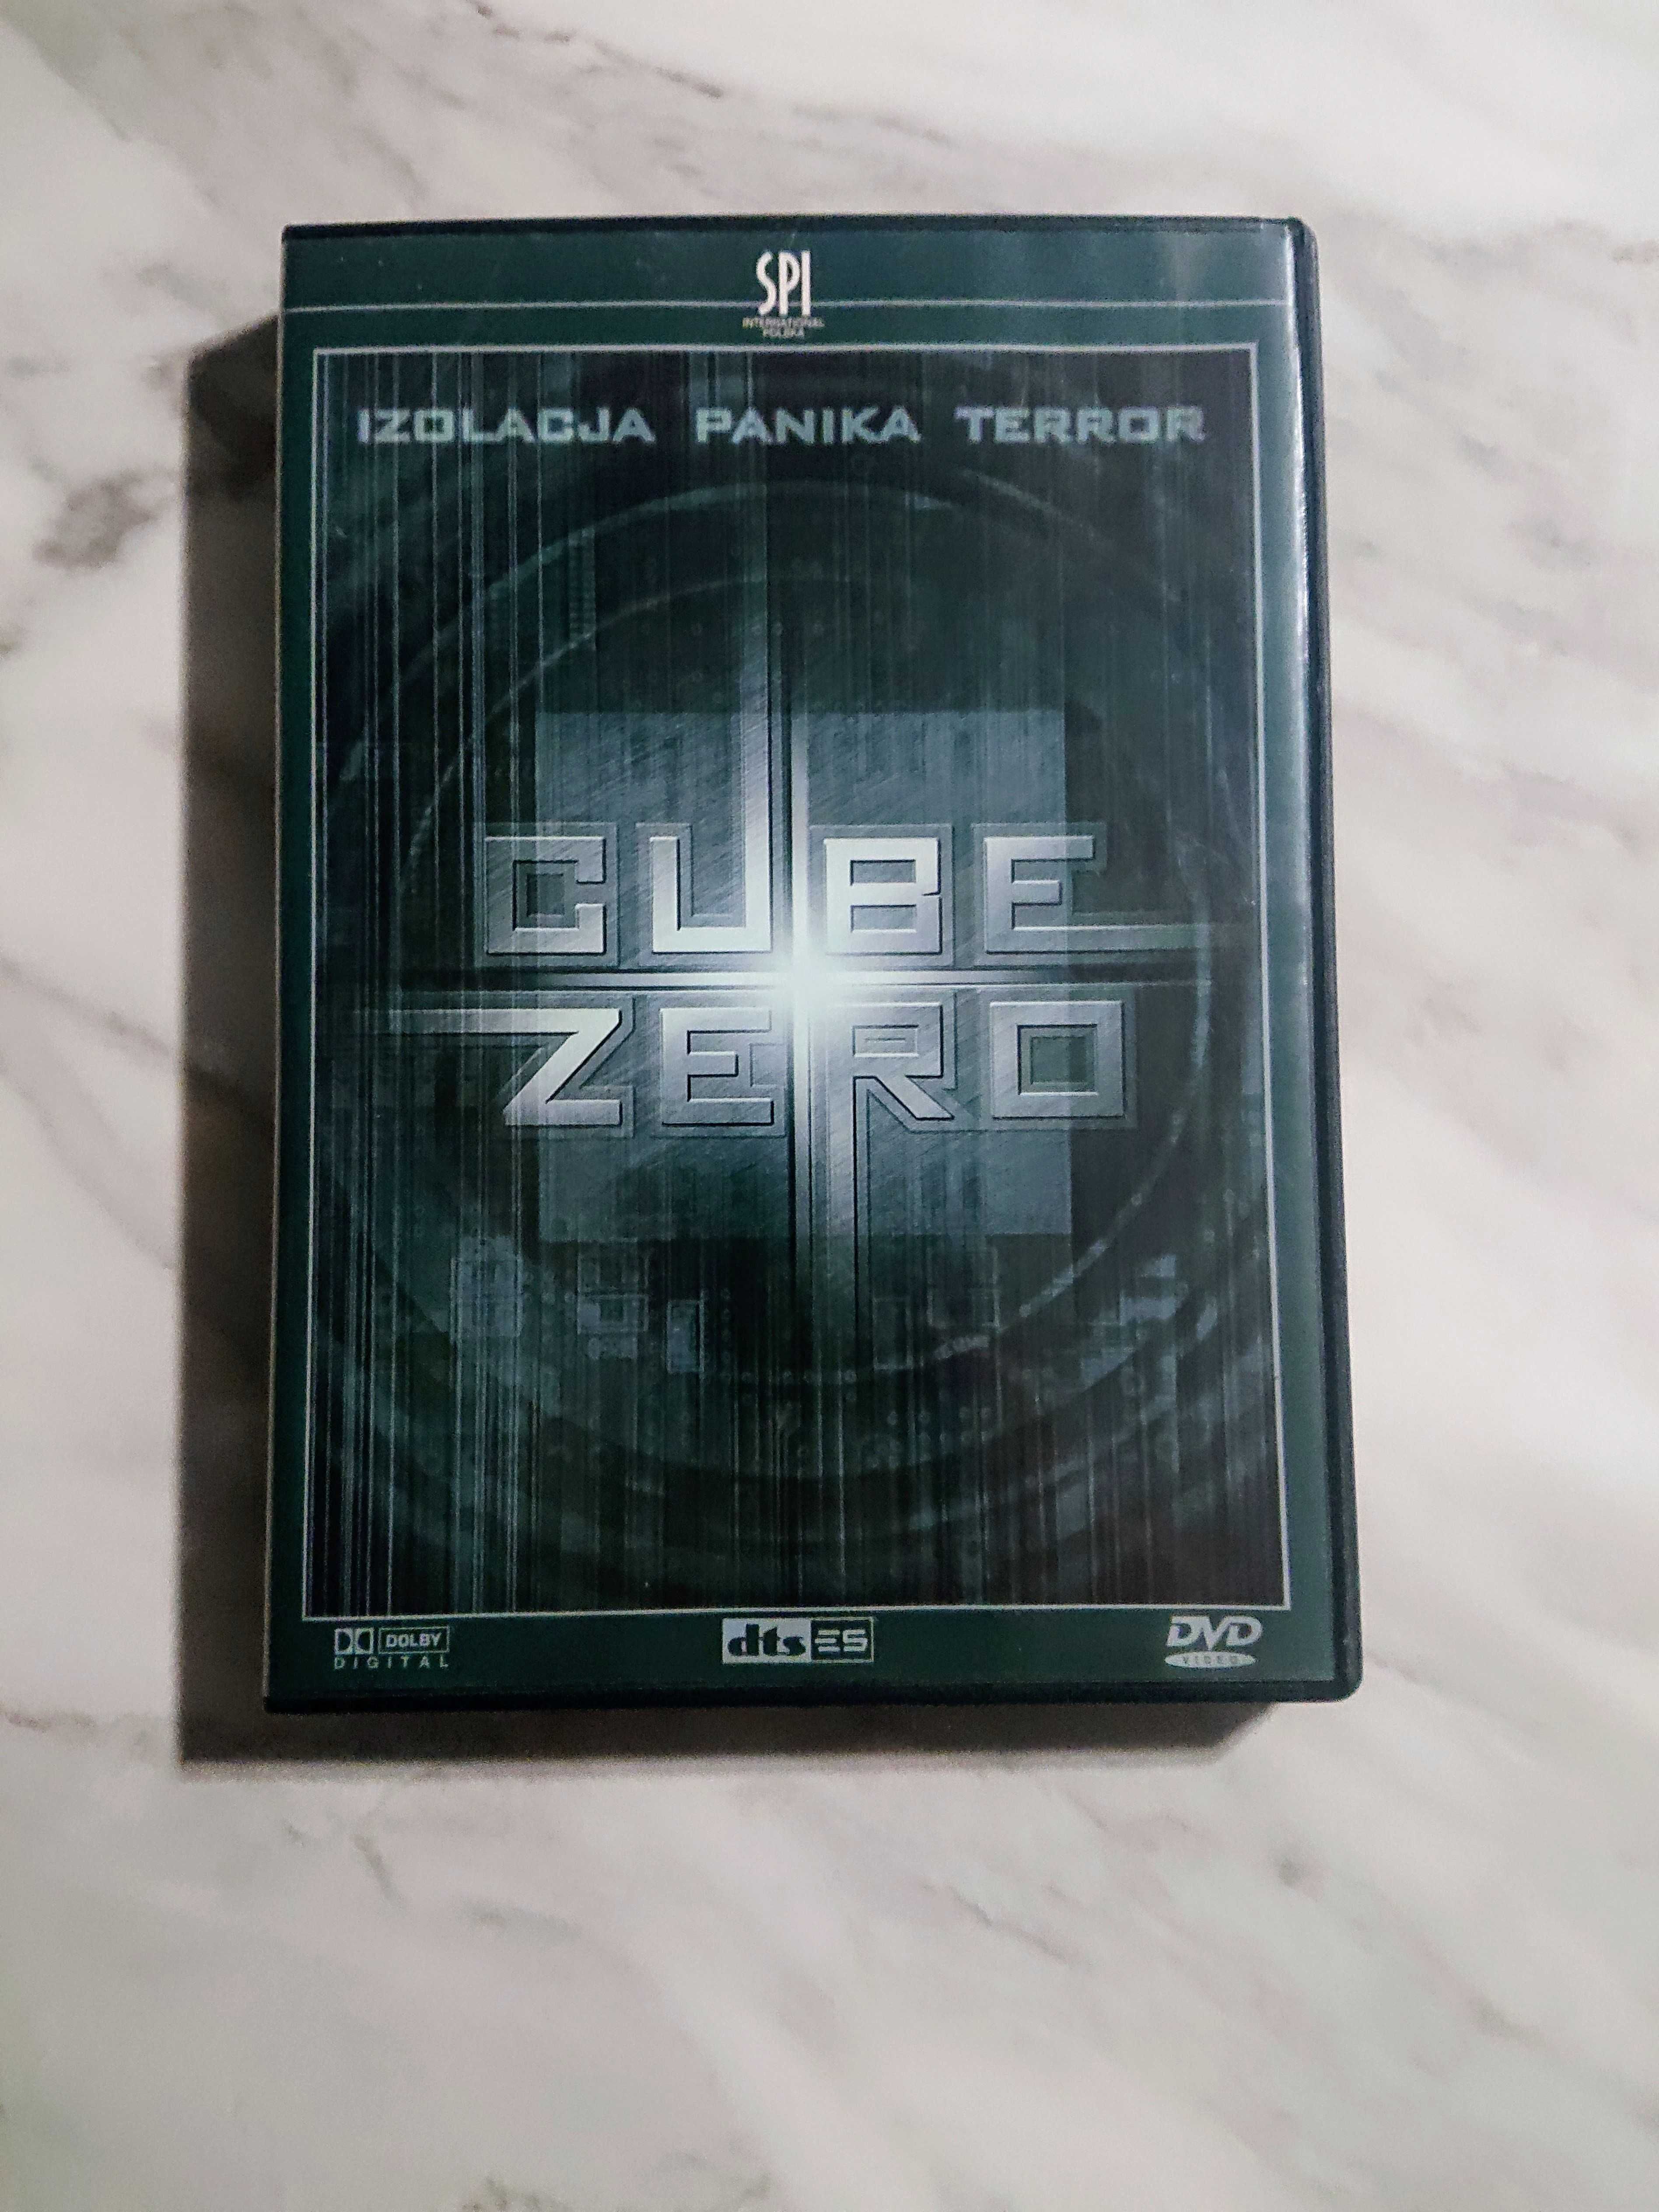 Cube zero film DVD